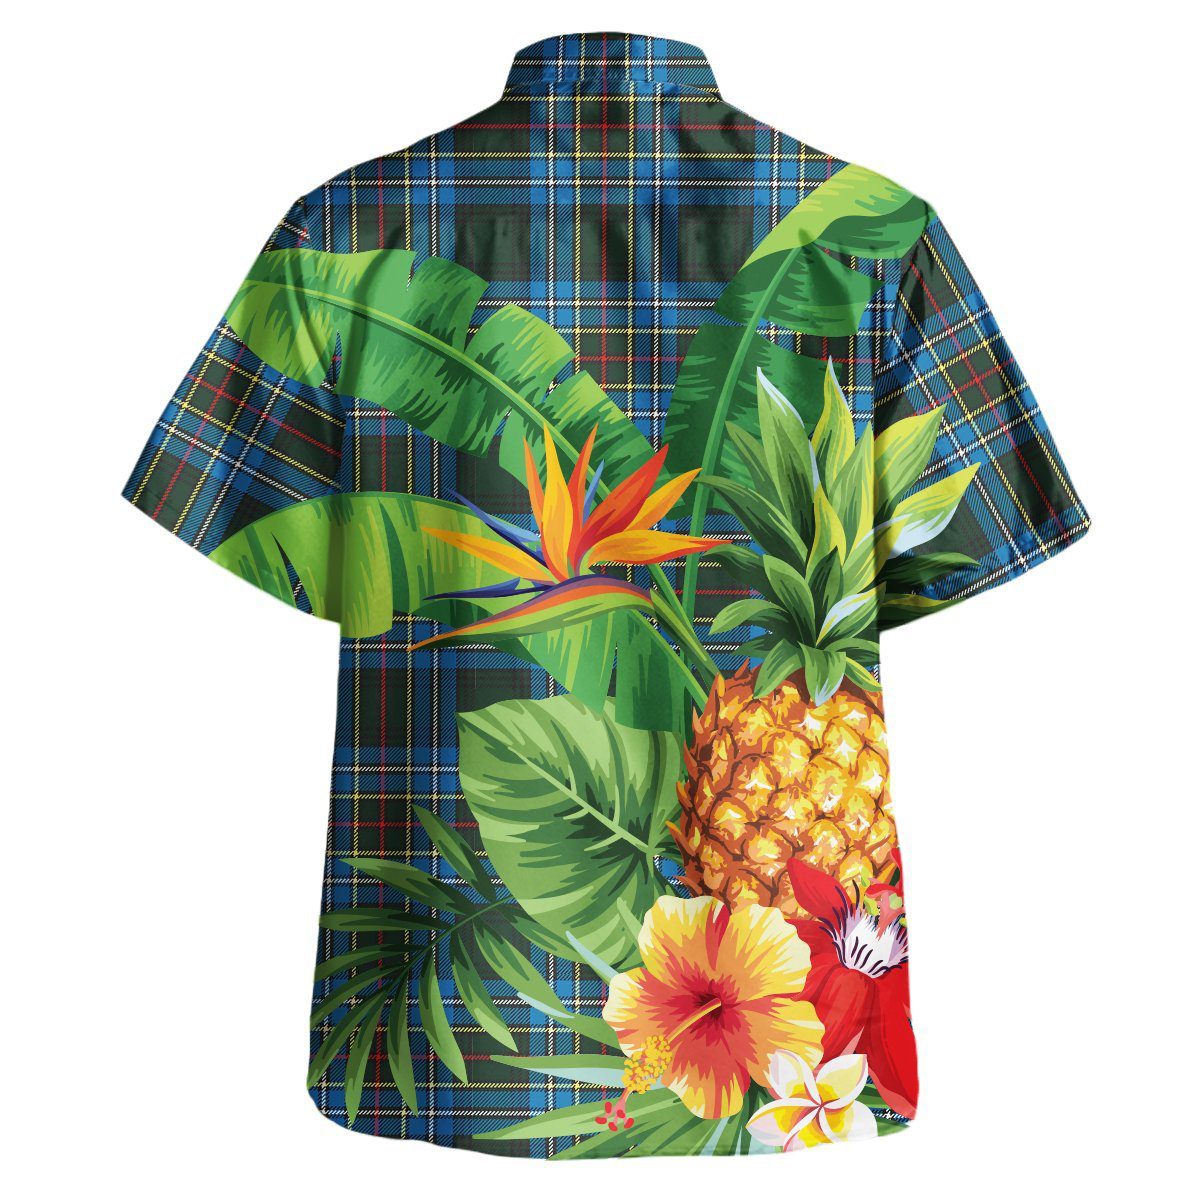 Cockburn Modern Tartan Aloha Shirt version 2